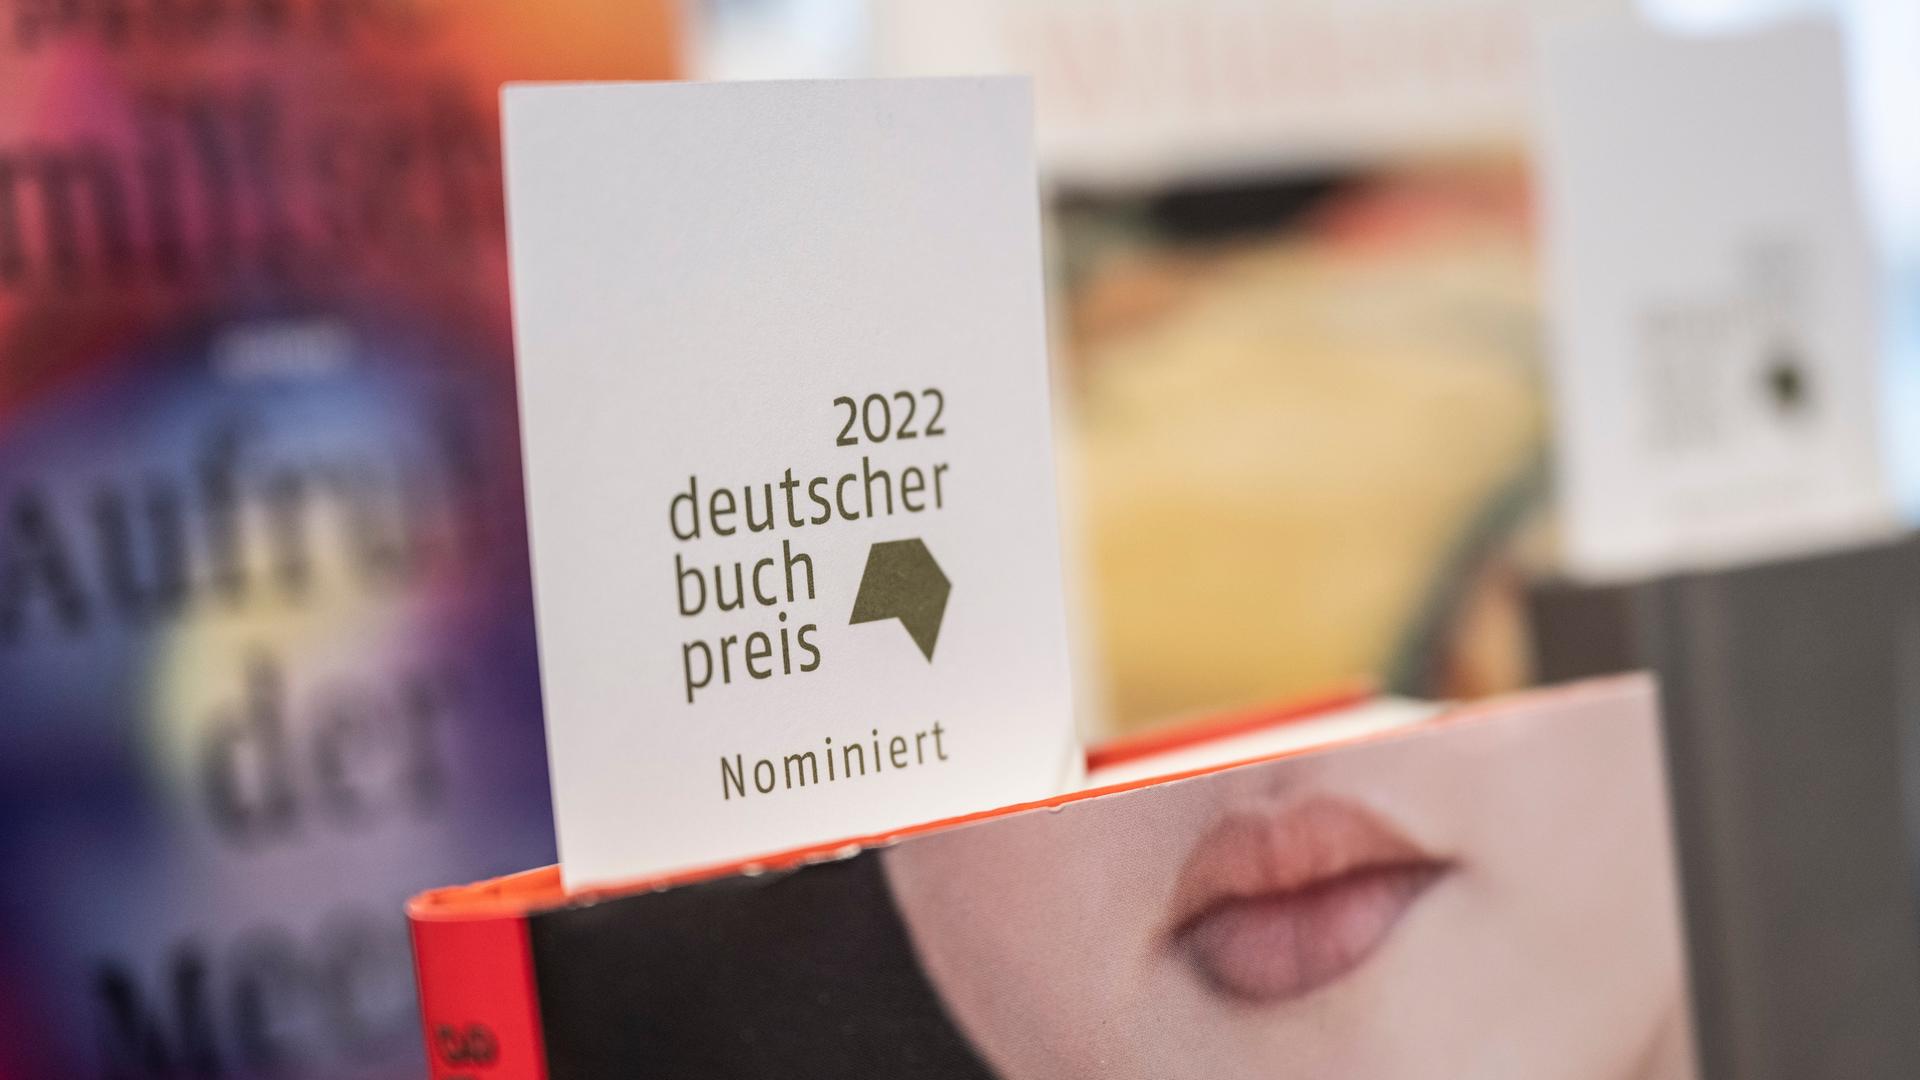 Ein Schild mit der Aufschrift "2022 deutscher Buchpreis nominiert" steckt in der Buchhandlung Bücher im Bogen in Frankfurt am Main in einem Buch mit einem Frauengesicht, bei dem nur der Mund zu sehen  ist.